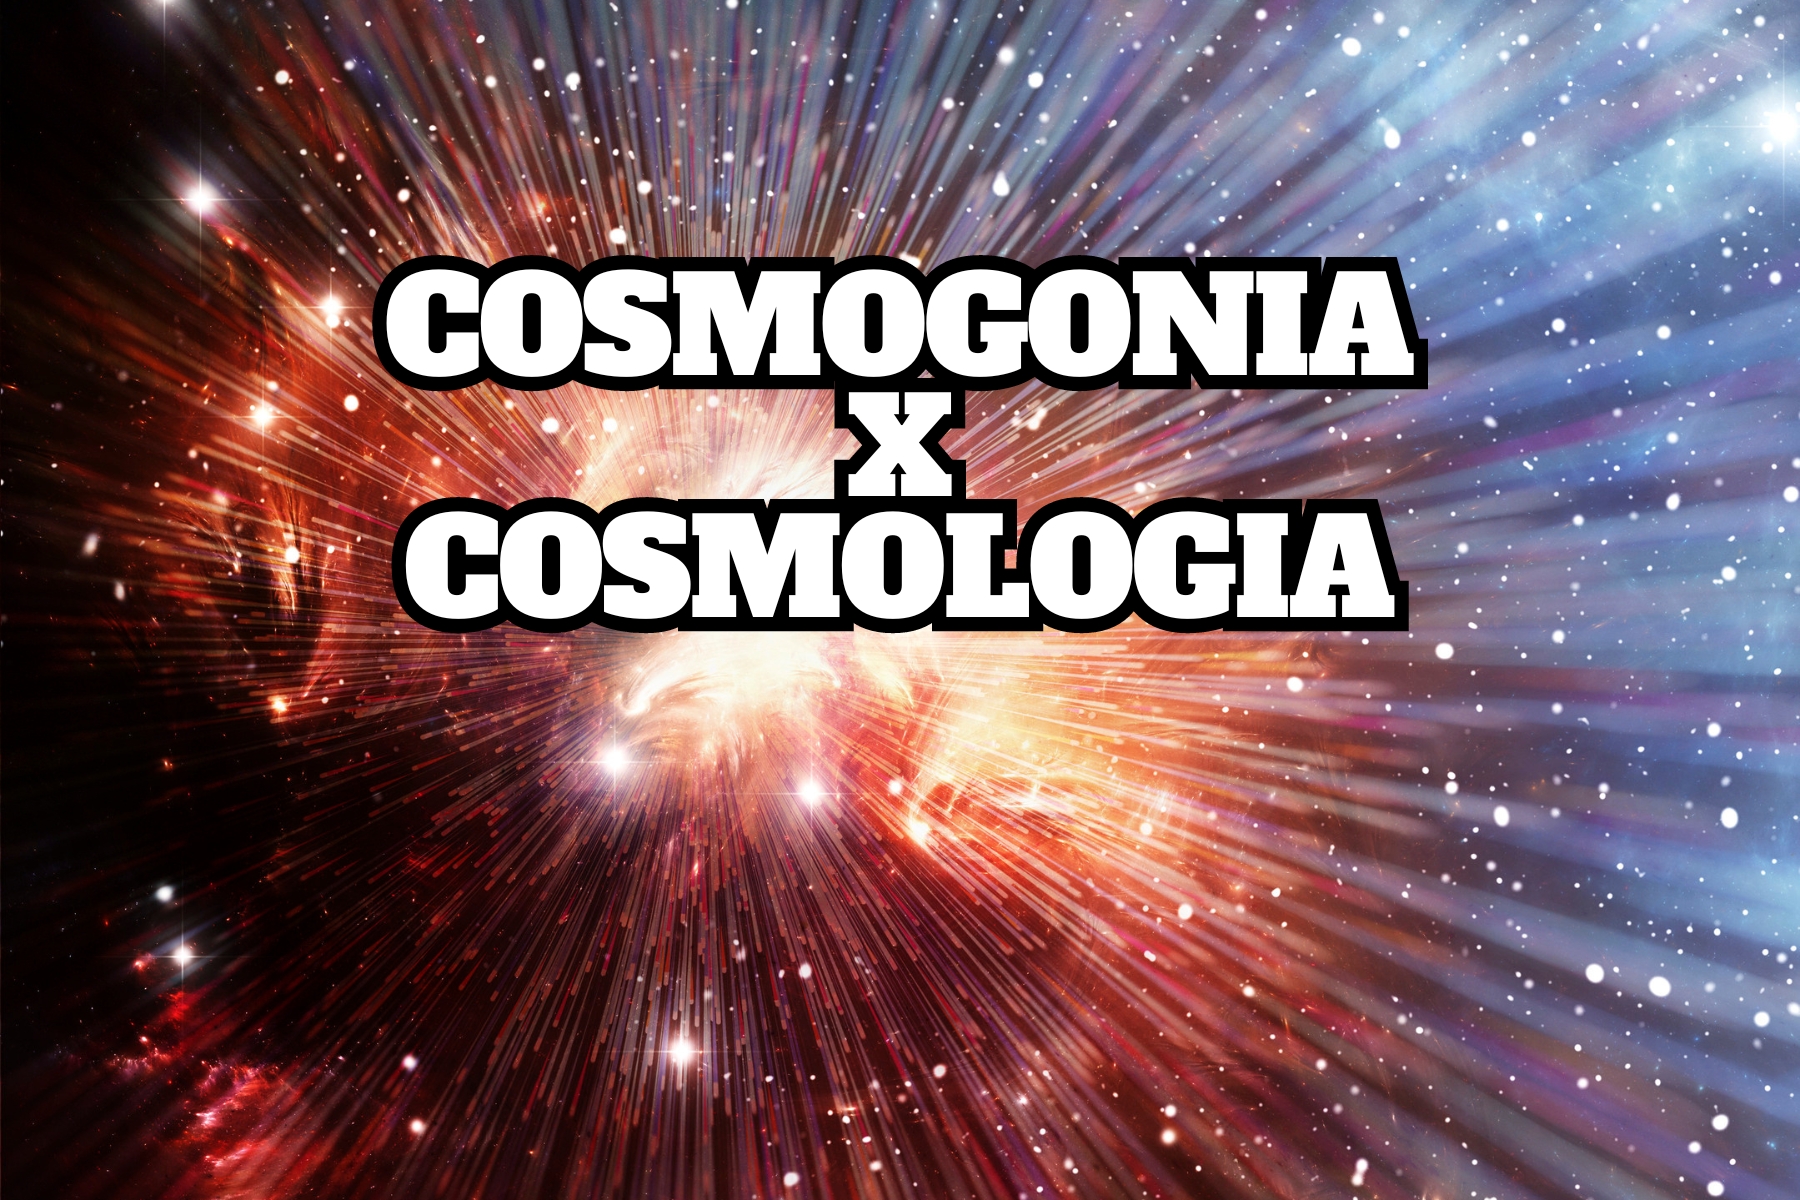 Cosmogonia e cosmologia exploram as origens do universo; uma através de mitos culturais, outra via ciência rigorosa. Descubra suas diferenças.